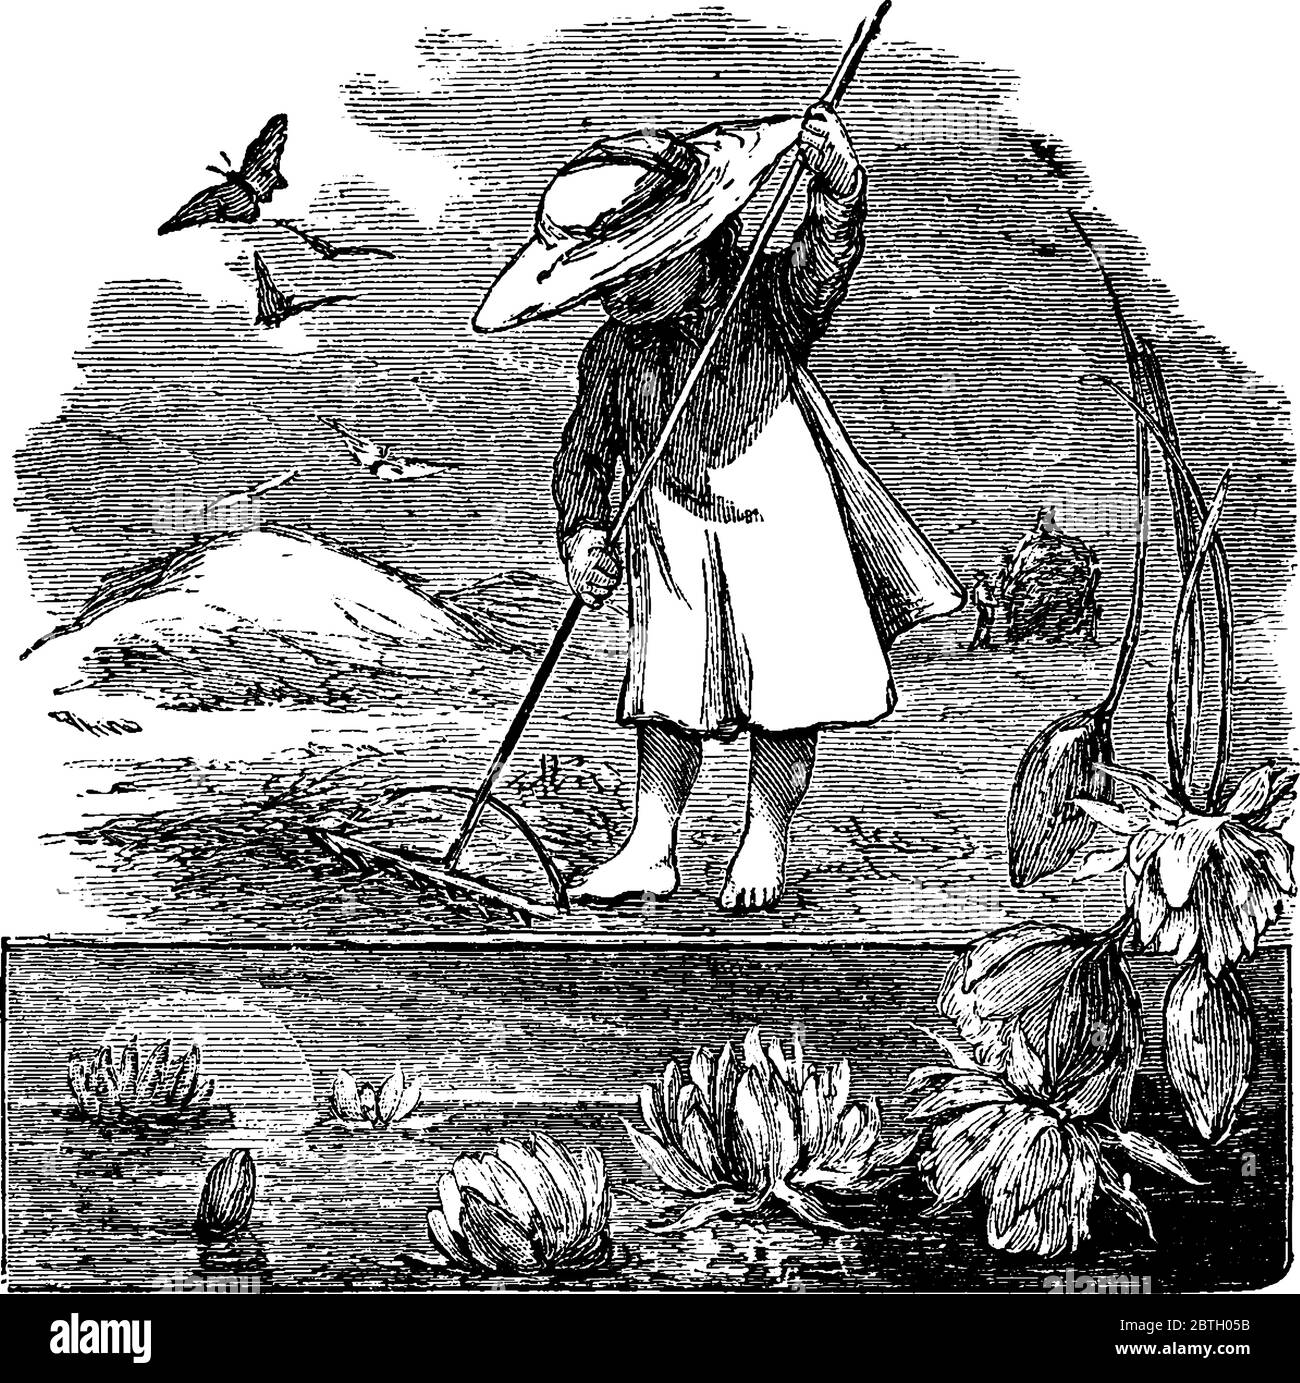 Une petite fille raking, essayant d'enlever les feuilles d'automne et les lames d'herbe qui n'ont pas survécu à l'hiver., dessin de ligne vintage ou illustration de gravure. Illustration de Vecteur